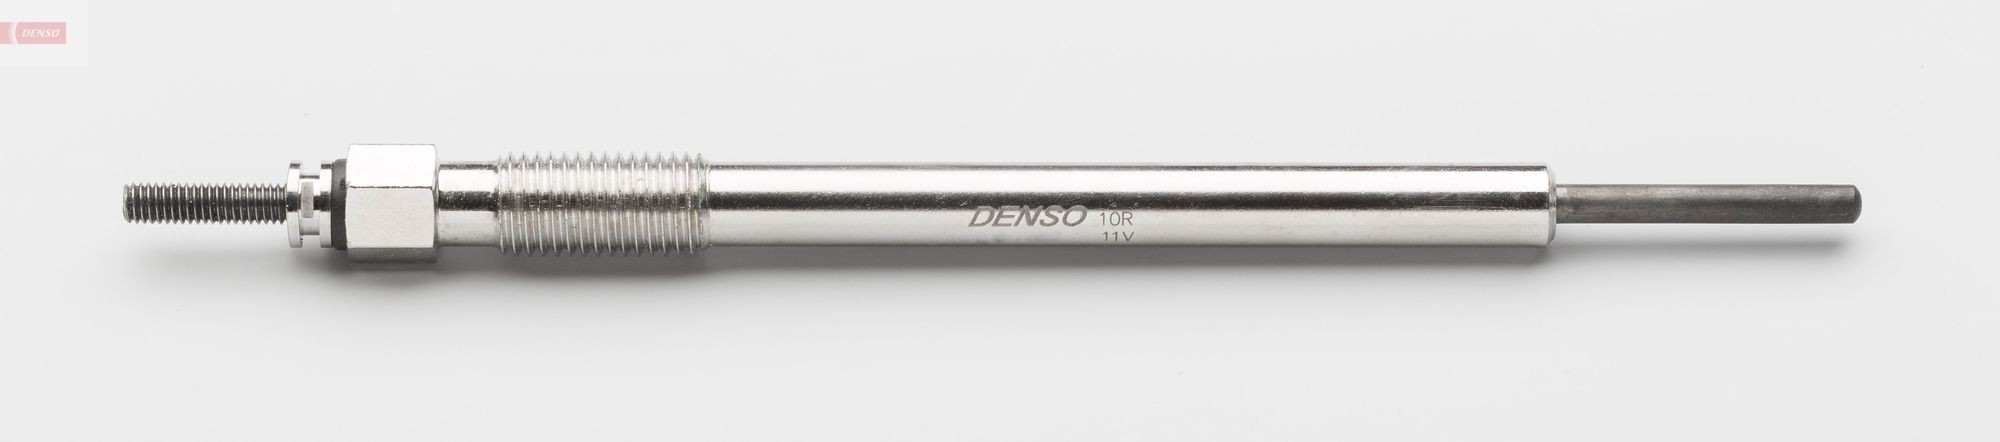 Diesel glow plugs DG-600 in original quality